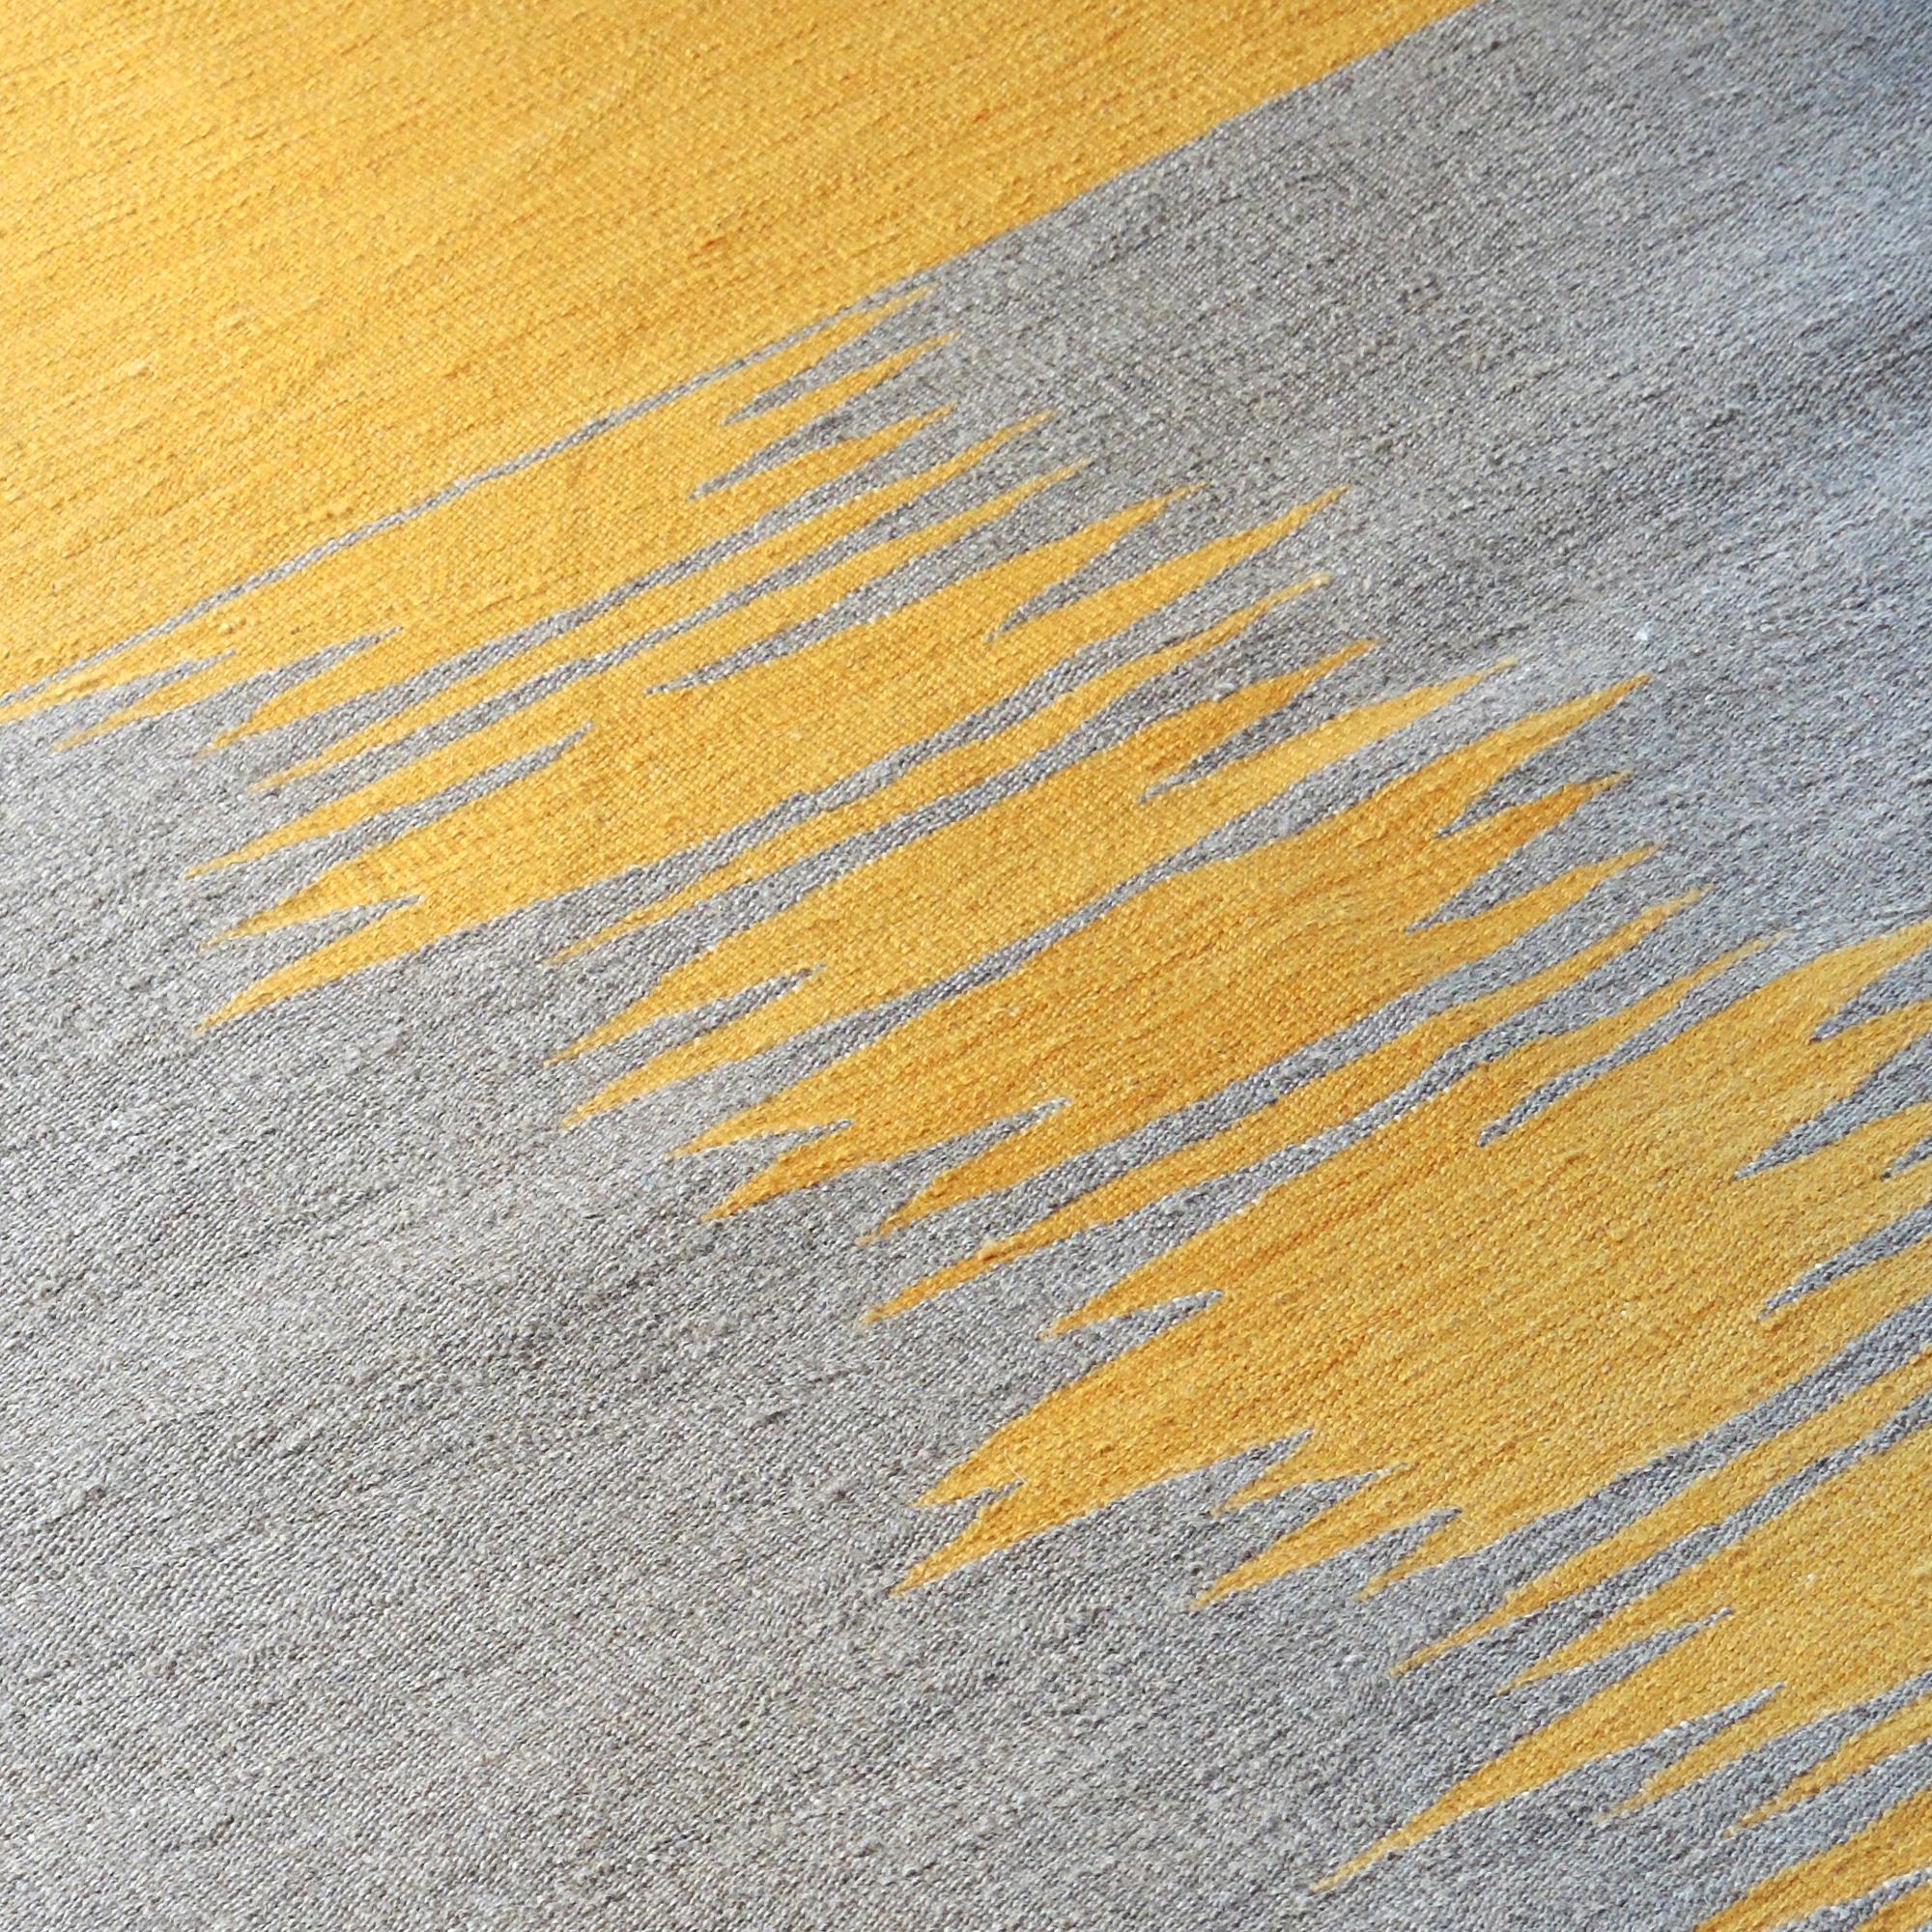 Le tapis kilim Yakamoz No 6 fait partie d'une série de kilims qui s'inspirent de la poésie des reflets lumineux à la surface de la mer. Les motifs abstraits, qui rappellent les transitions de couleurs alternées créées par la lumière réfléchie, sont